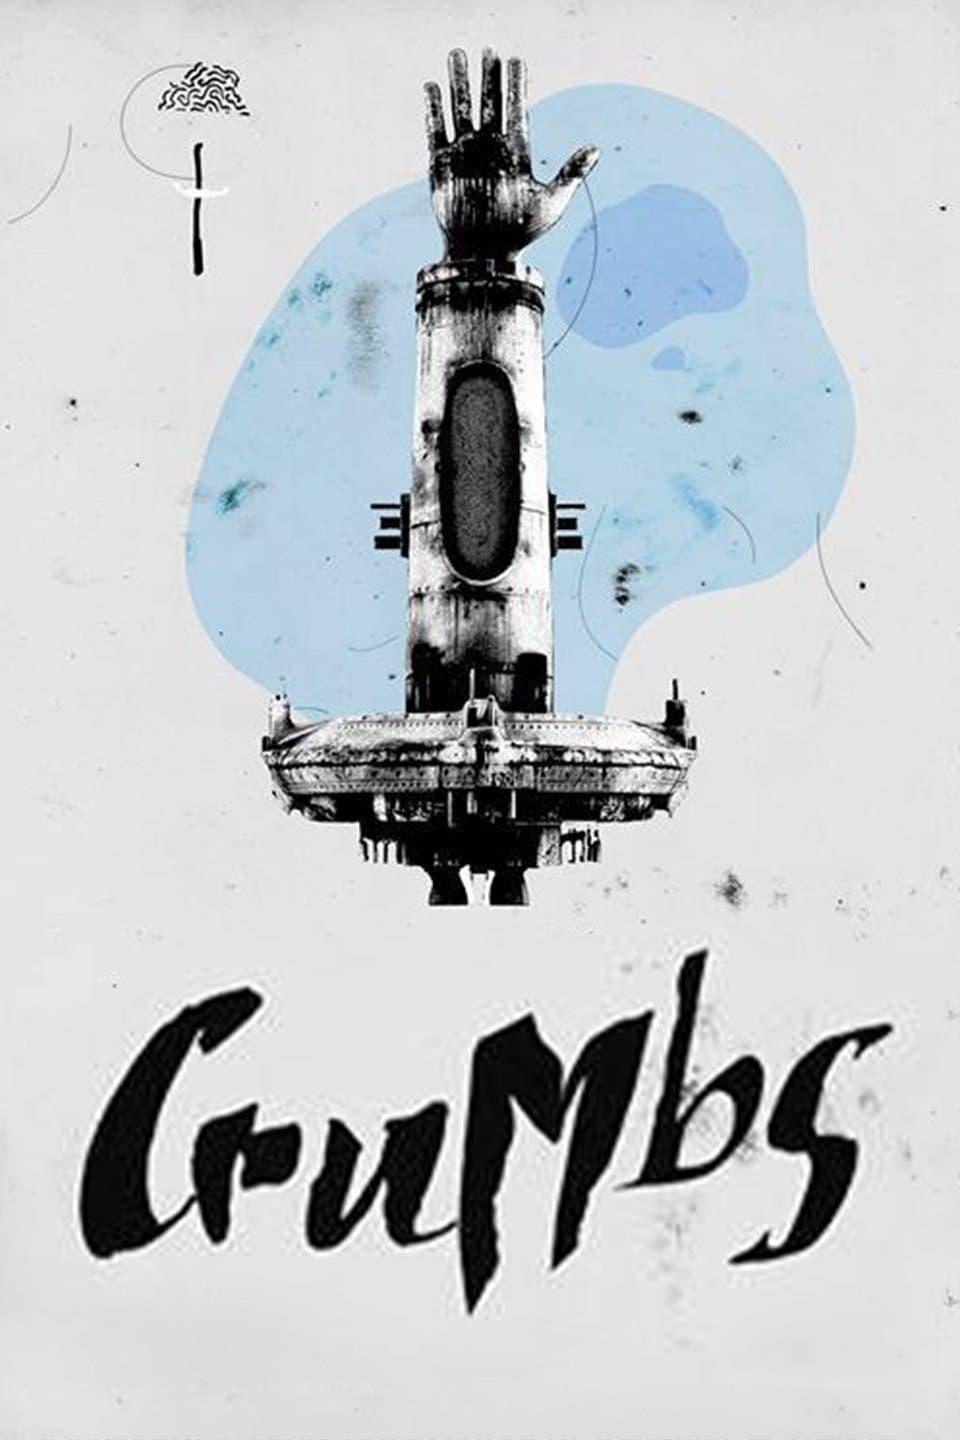 Crumbs poster